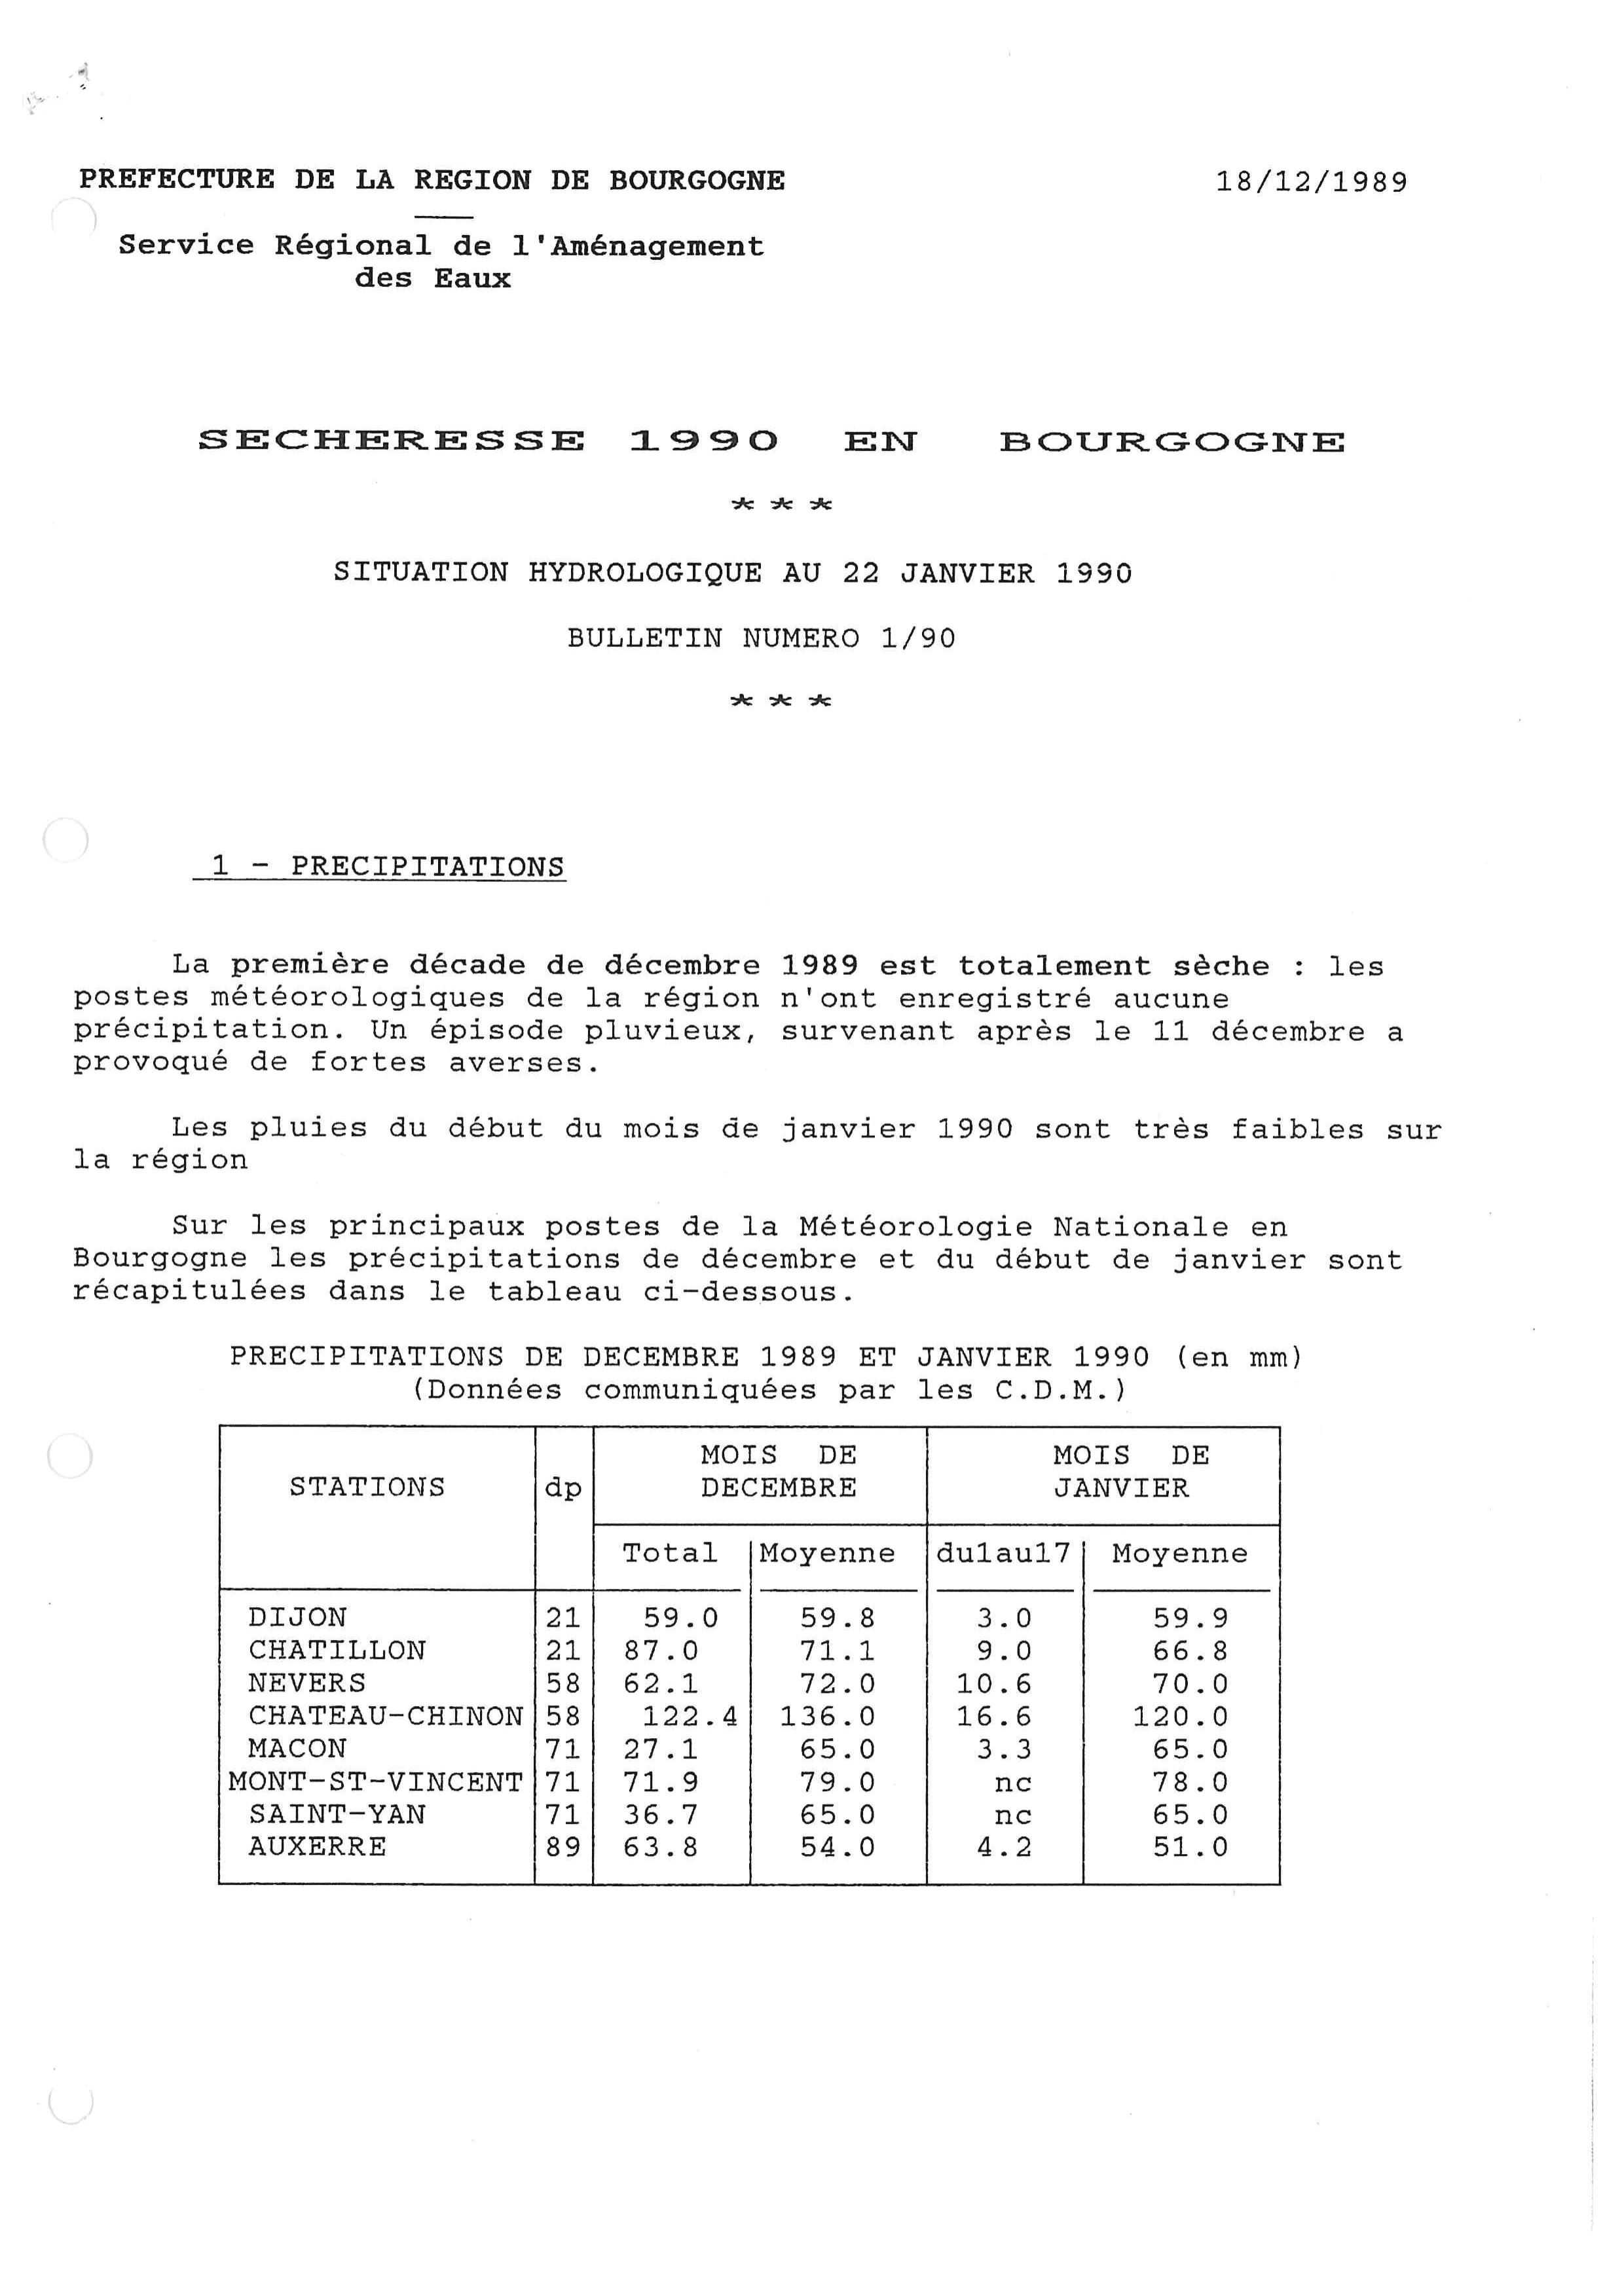 Bulletin hydrologique du mois de Janvier 1990